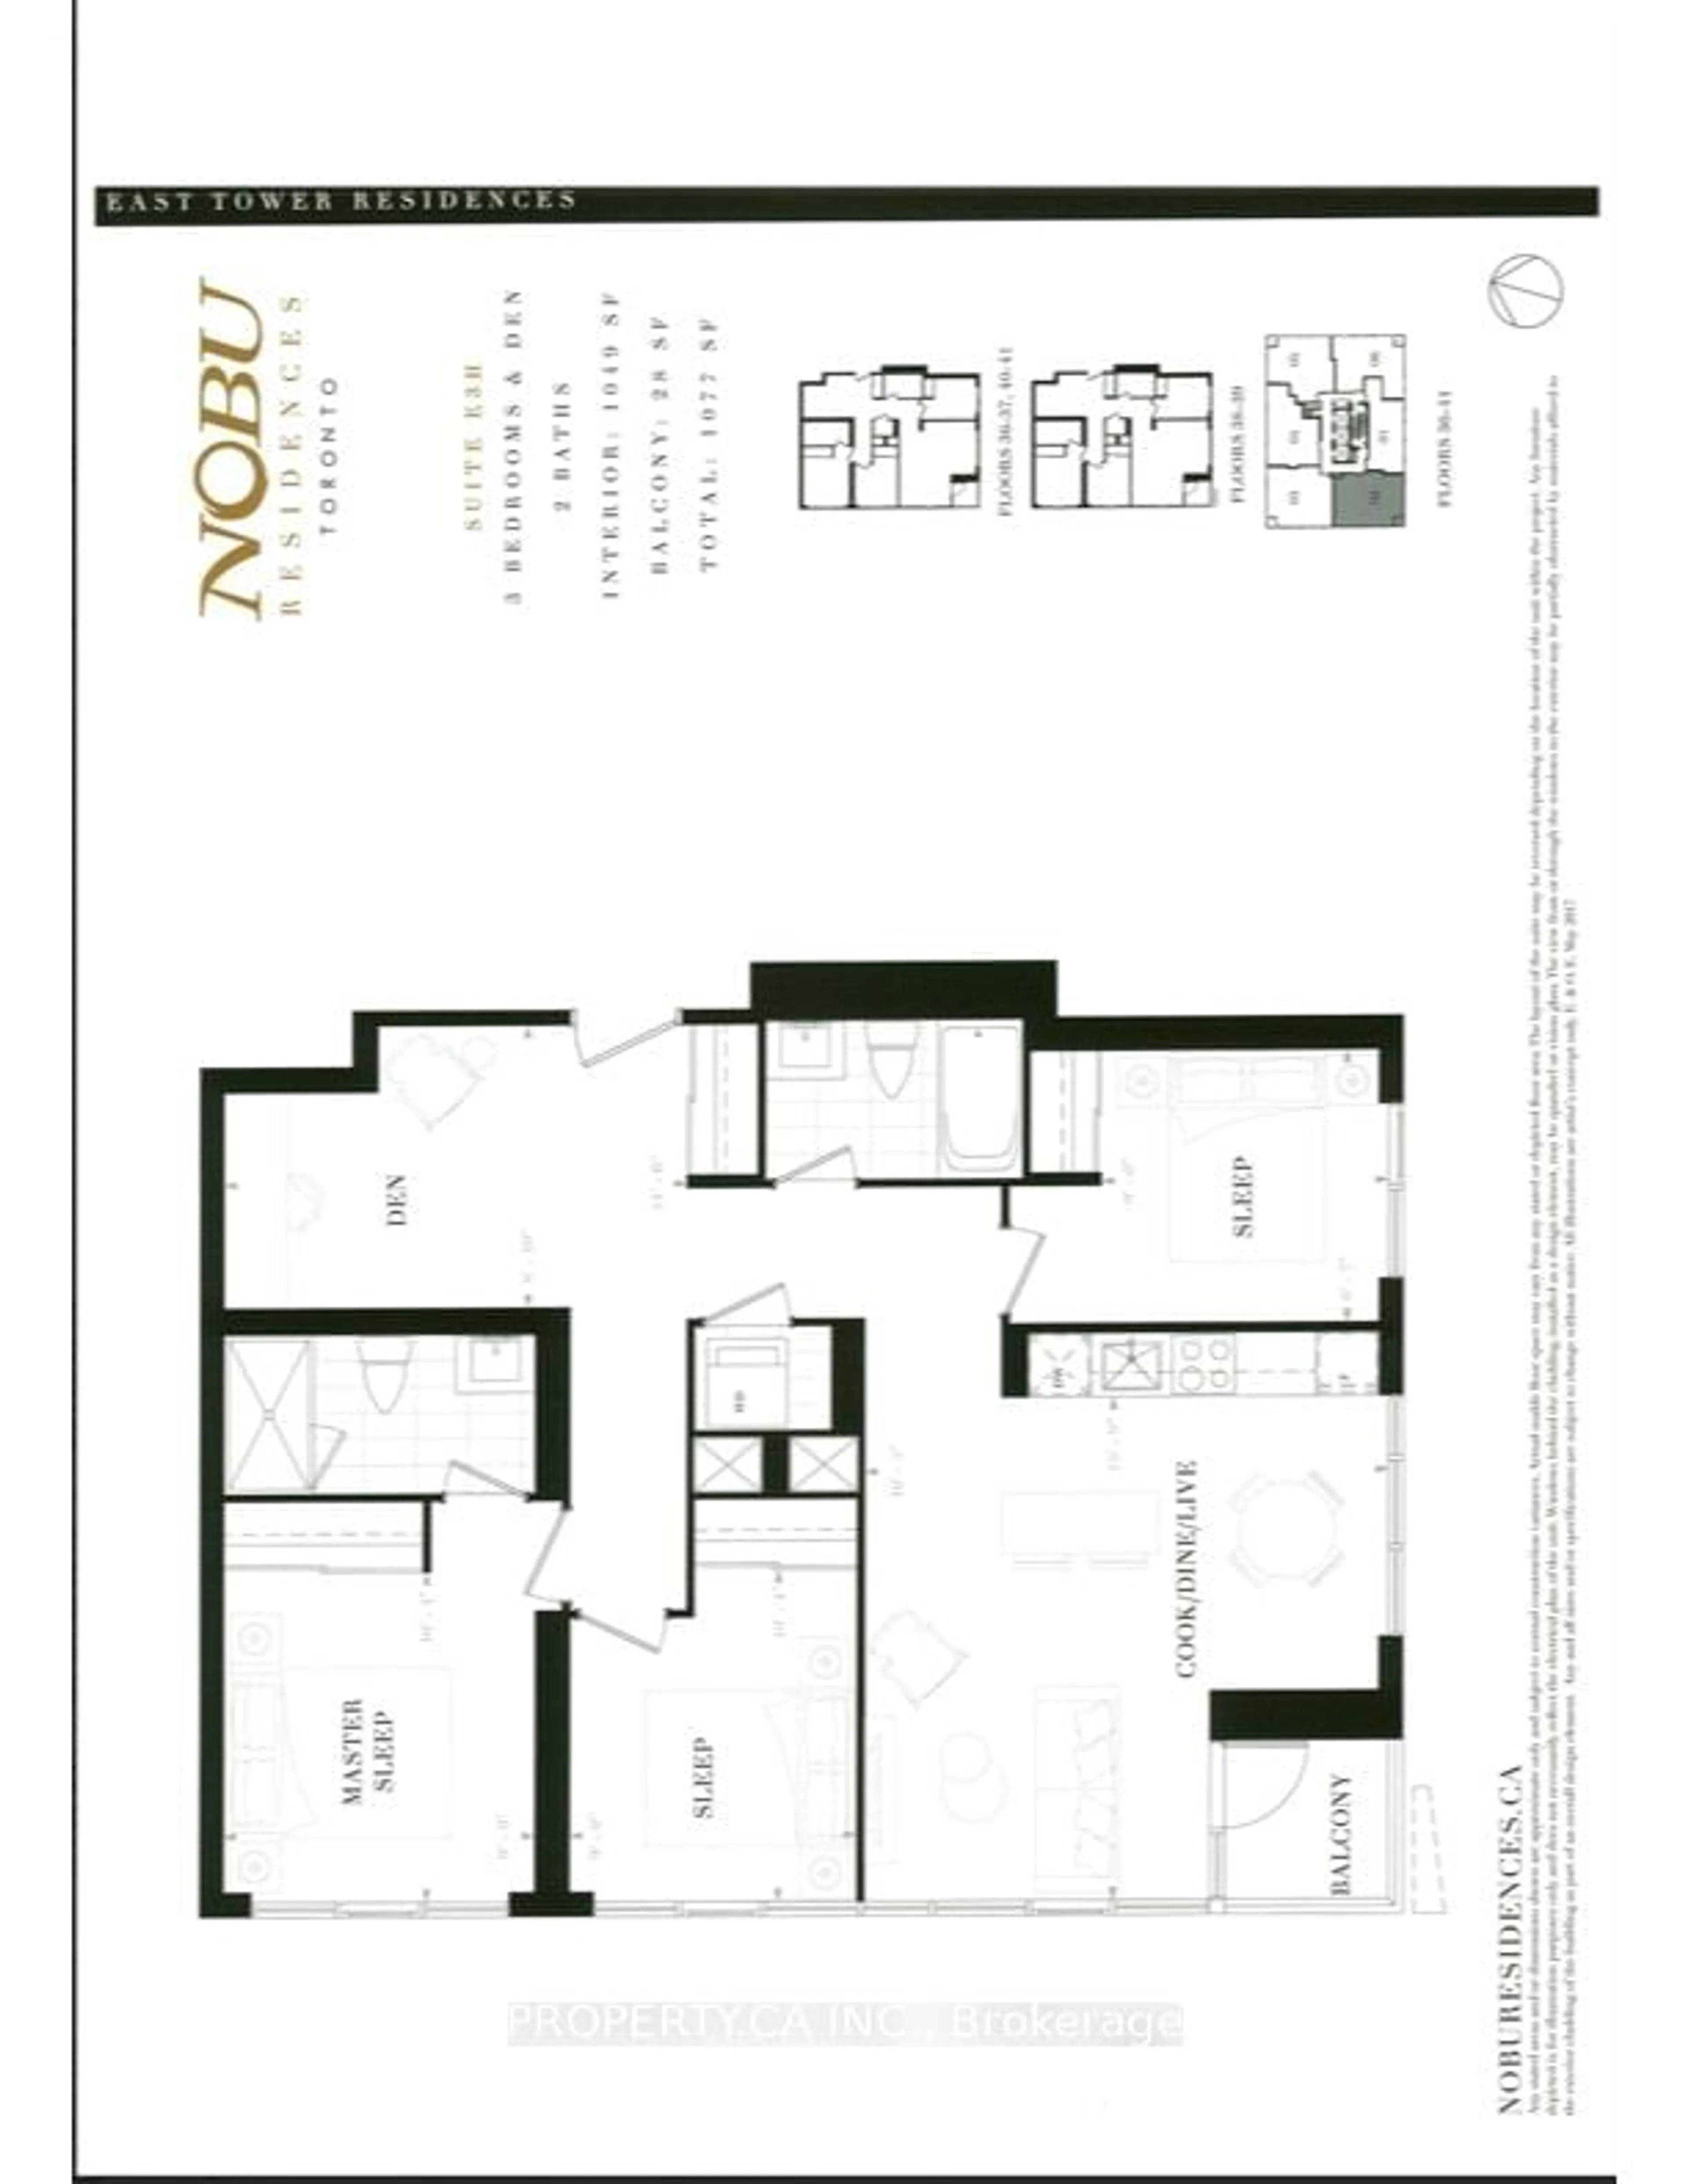 Floor plan for 15 Mercer St #4002, Toronto Ontario M5V 3C6